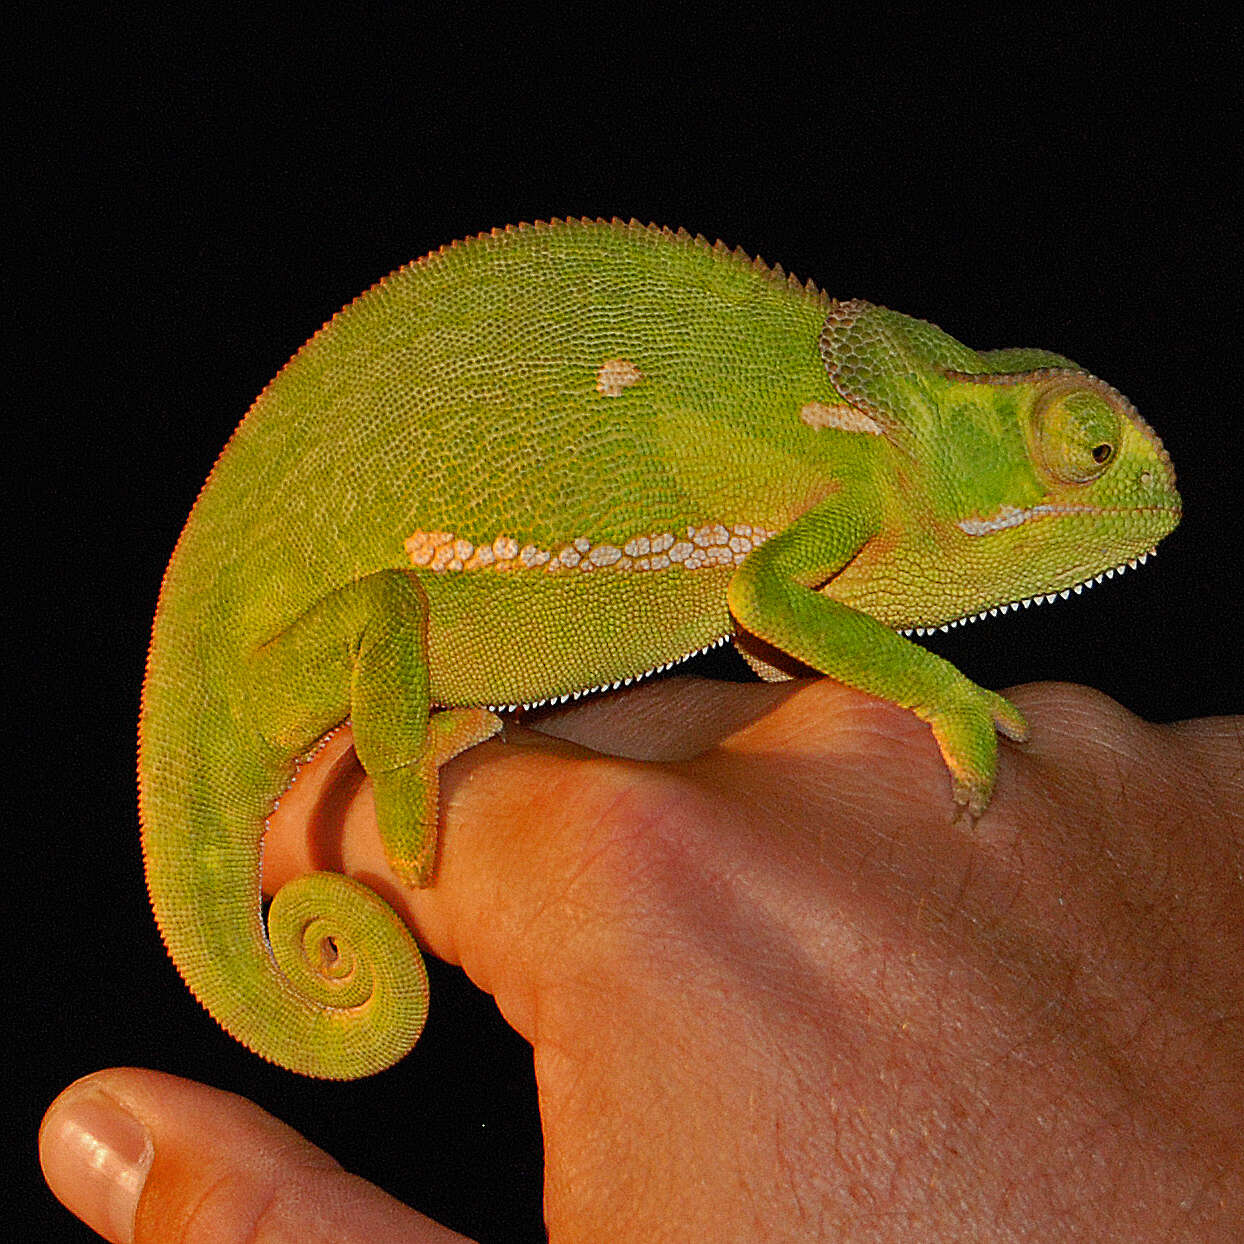 Image of chameleons